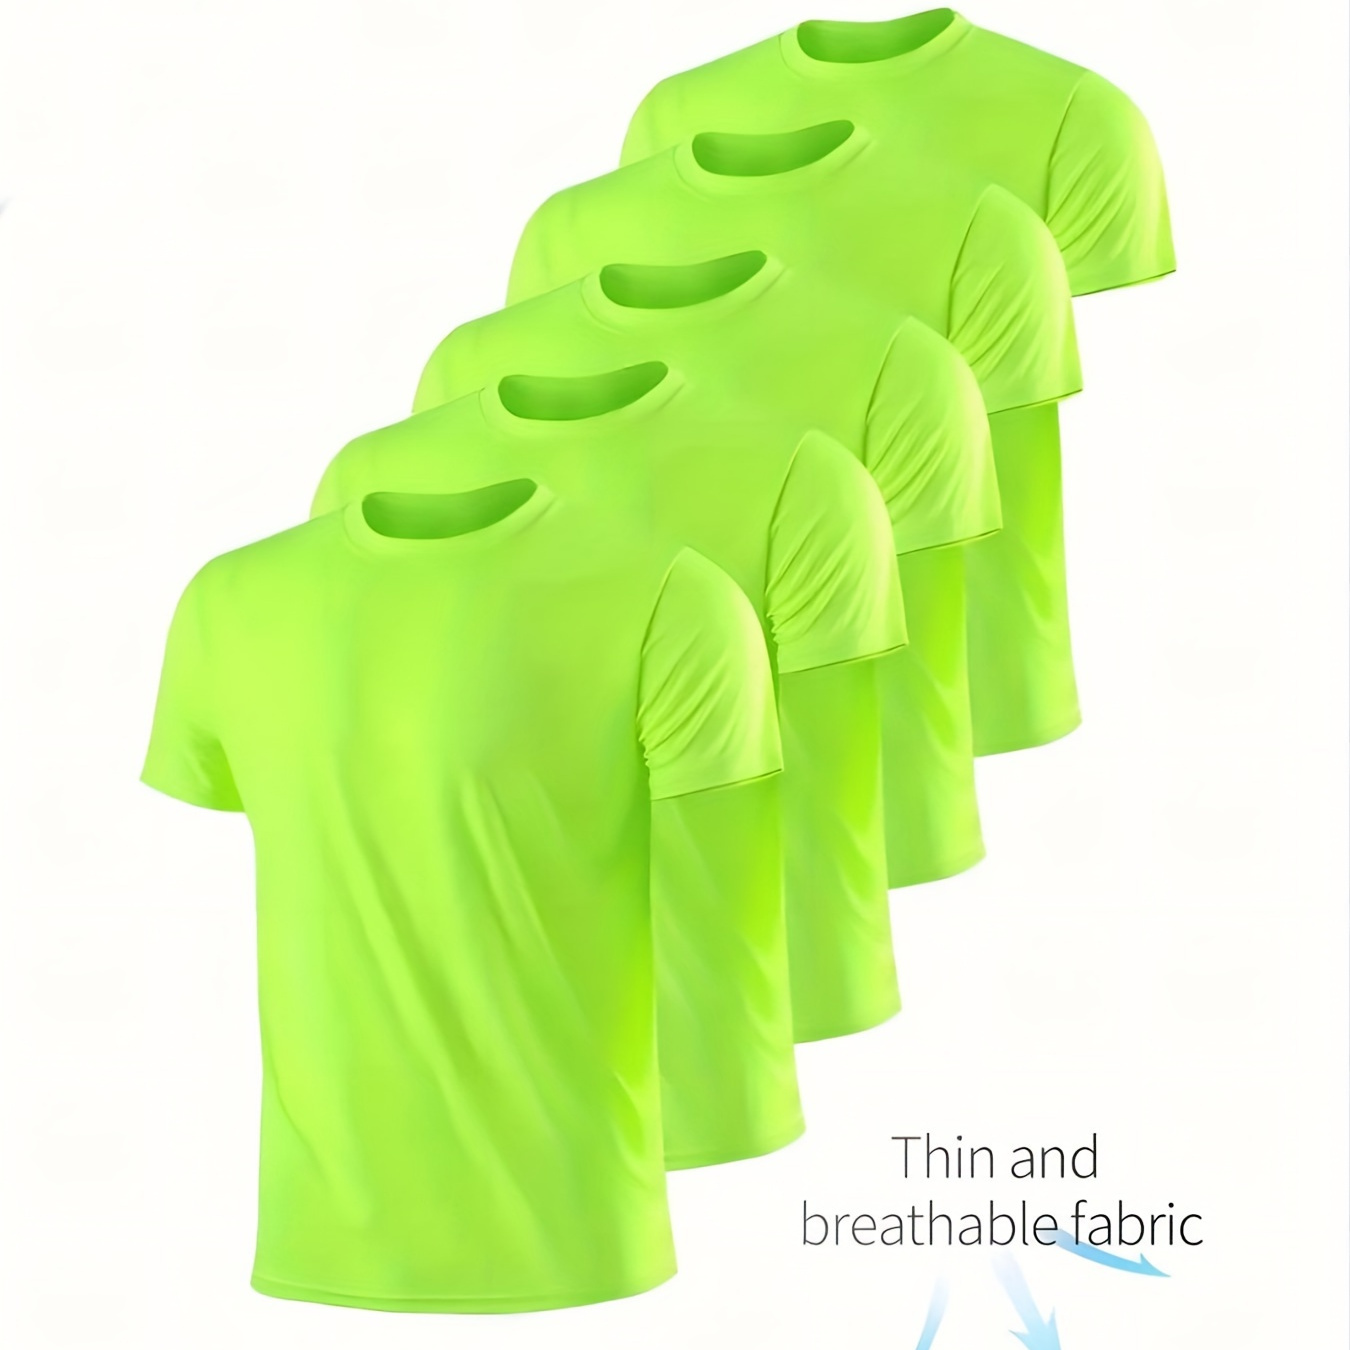 

5 Pcs Men's Quick Dry T Shirts, Breathable Suitable For Sports, Gym, Construction Site, Workout